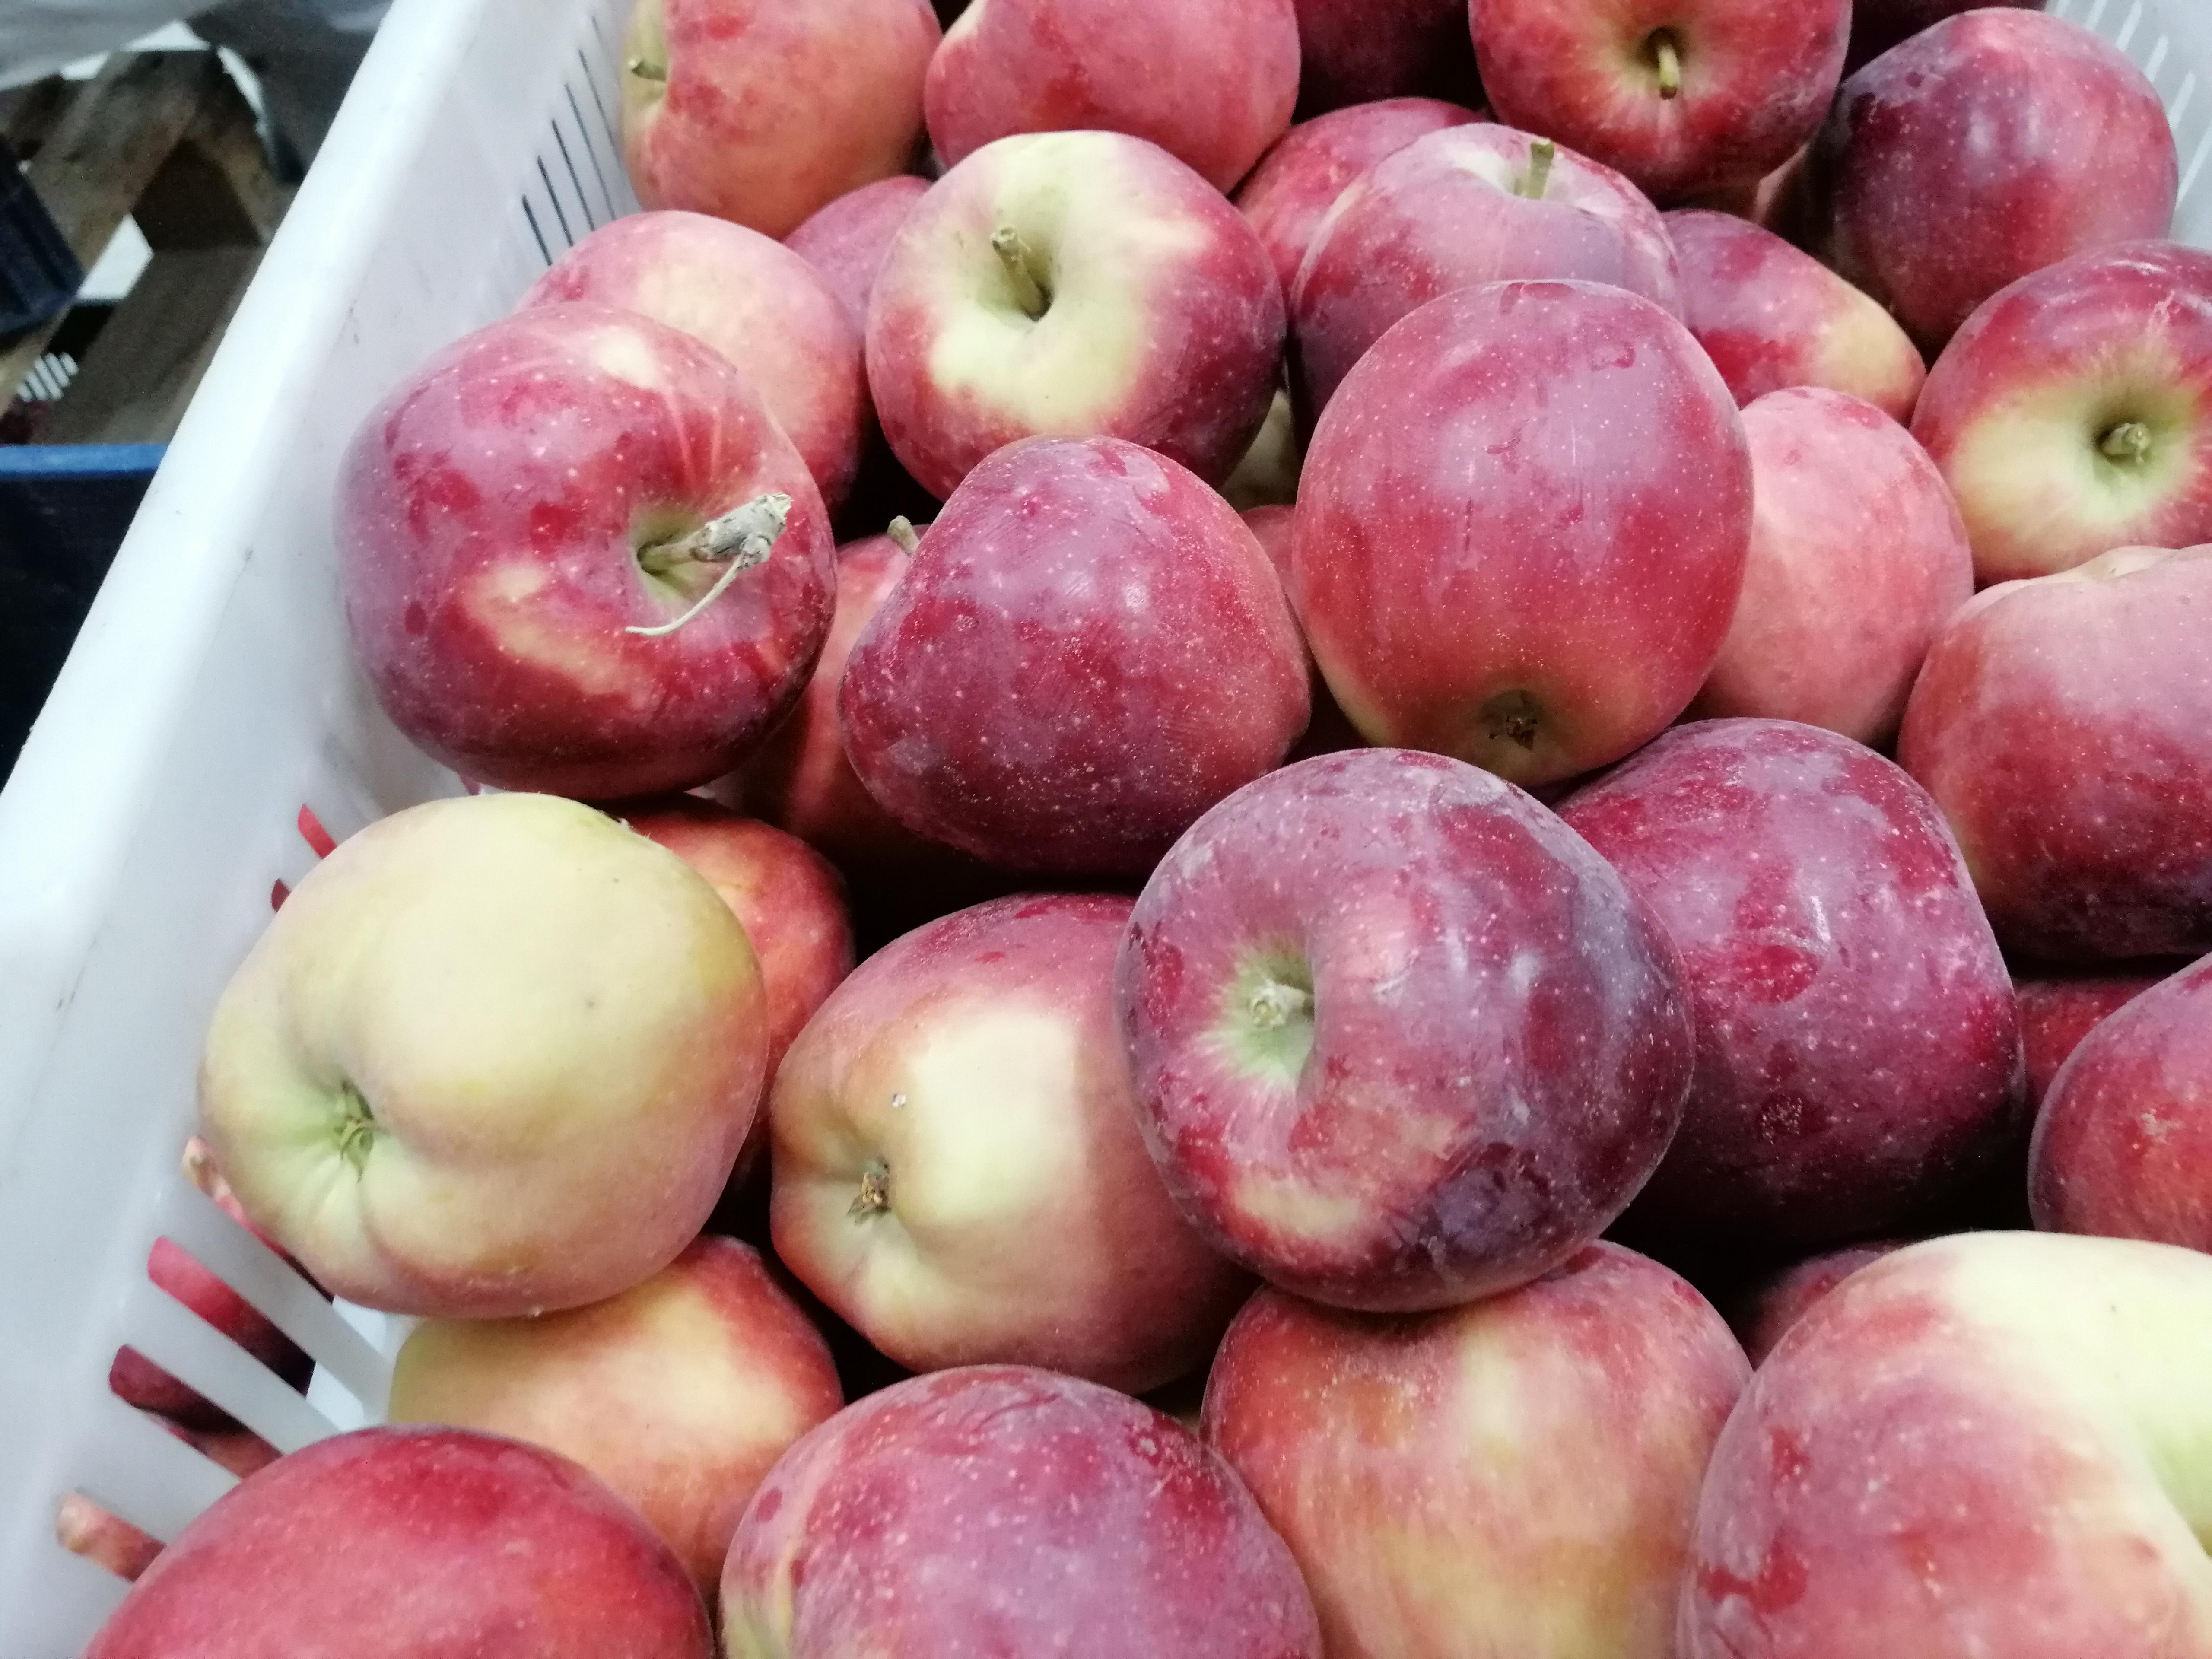 Elma - Ömer Ali Yüksek tarafından verilen satılık starkrimson delicious çeşidi elma  ilanını ve diğer satılık elma ilanlarını tarimziraat.com adresinde bulabilirsiniz